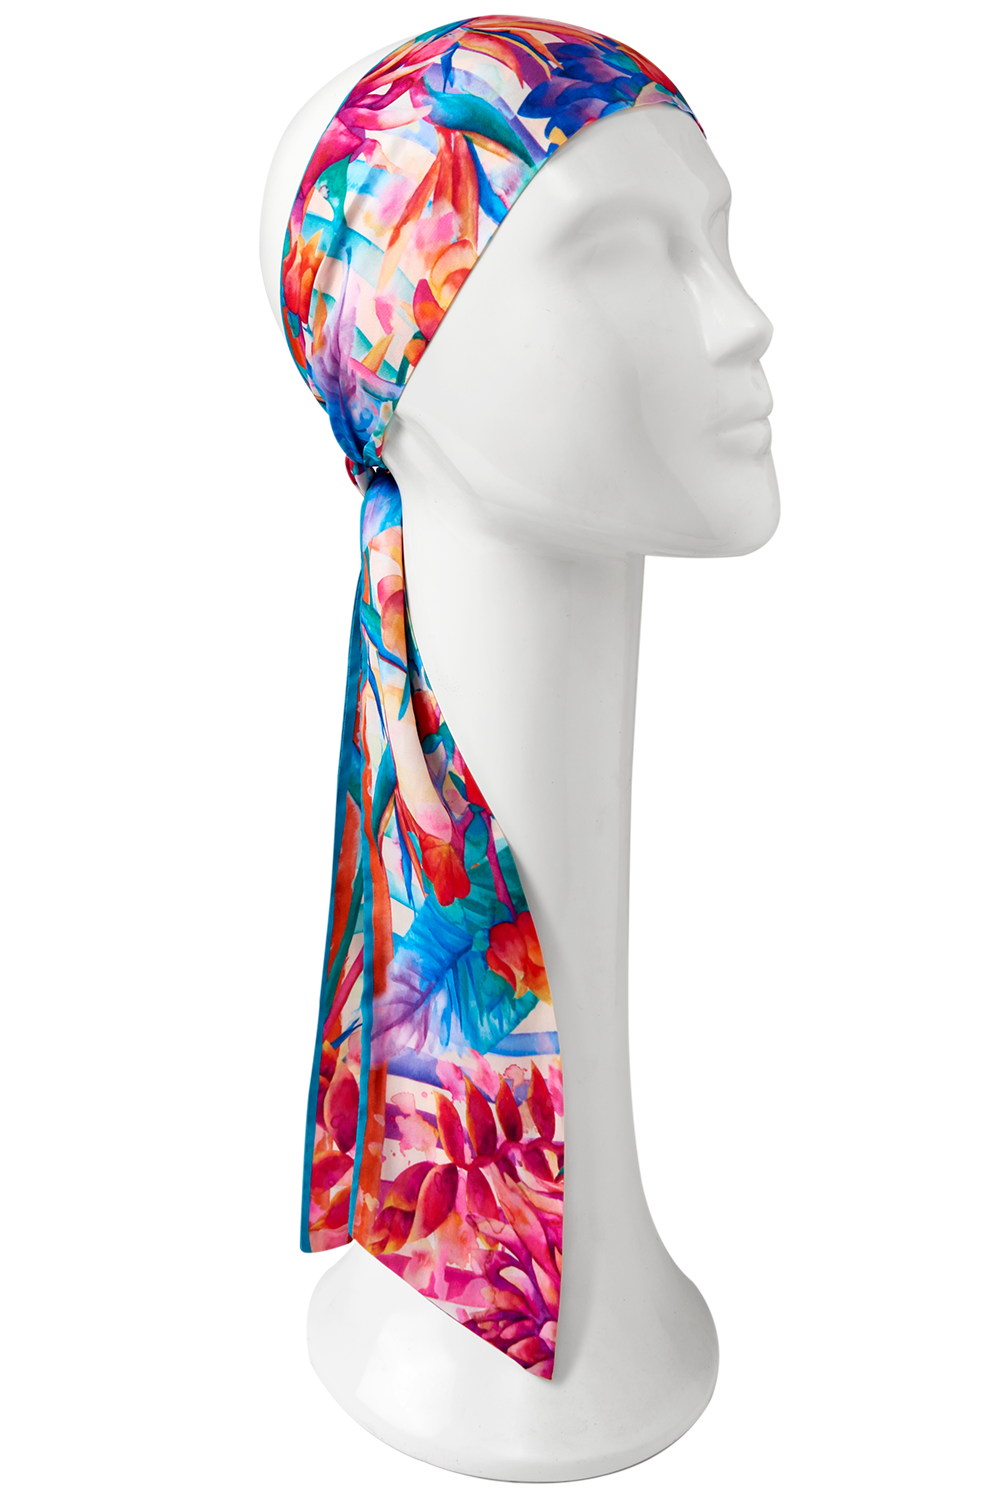 faixa bandana twilly scarf me listra aquarela em cetim poliéster 8x130cm